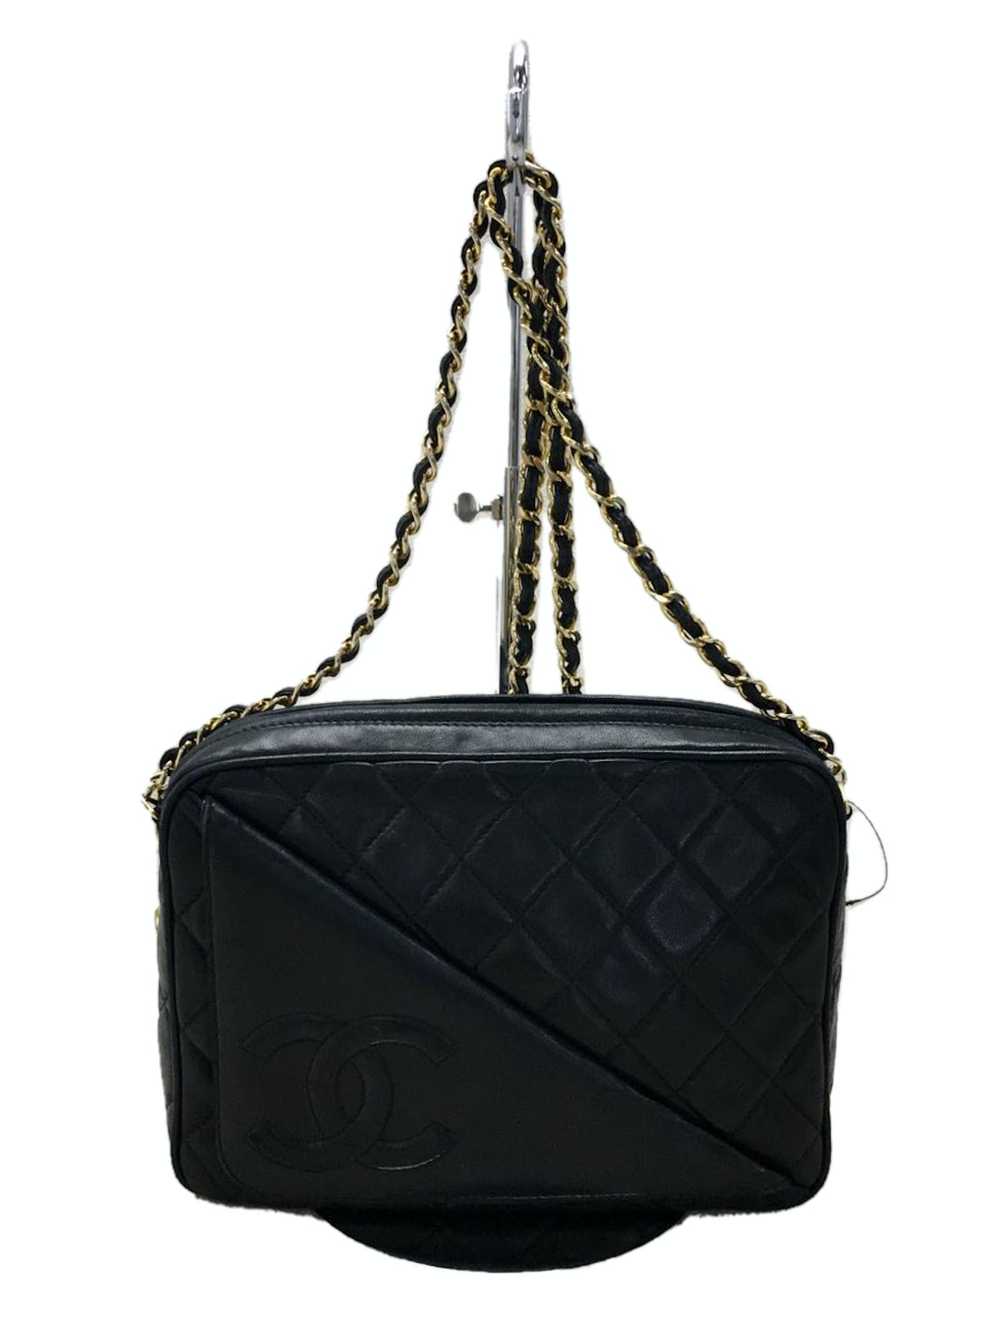 Chanel Chanel Leather Shoulder Bag - image 1